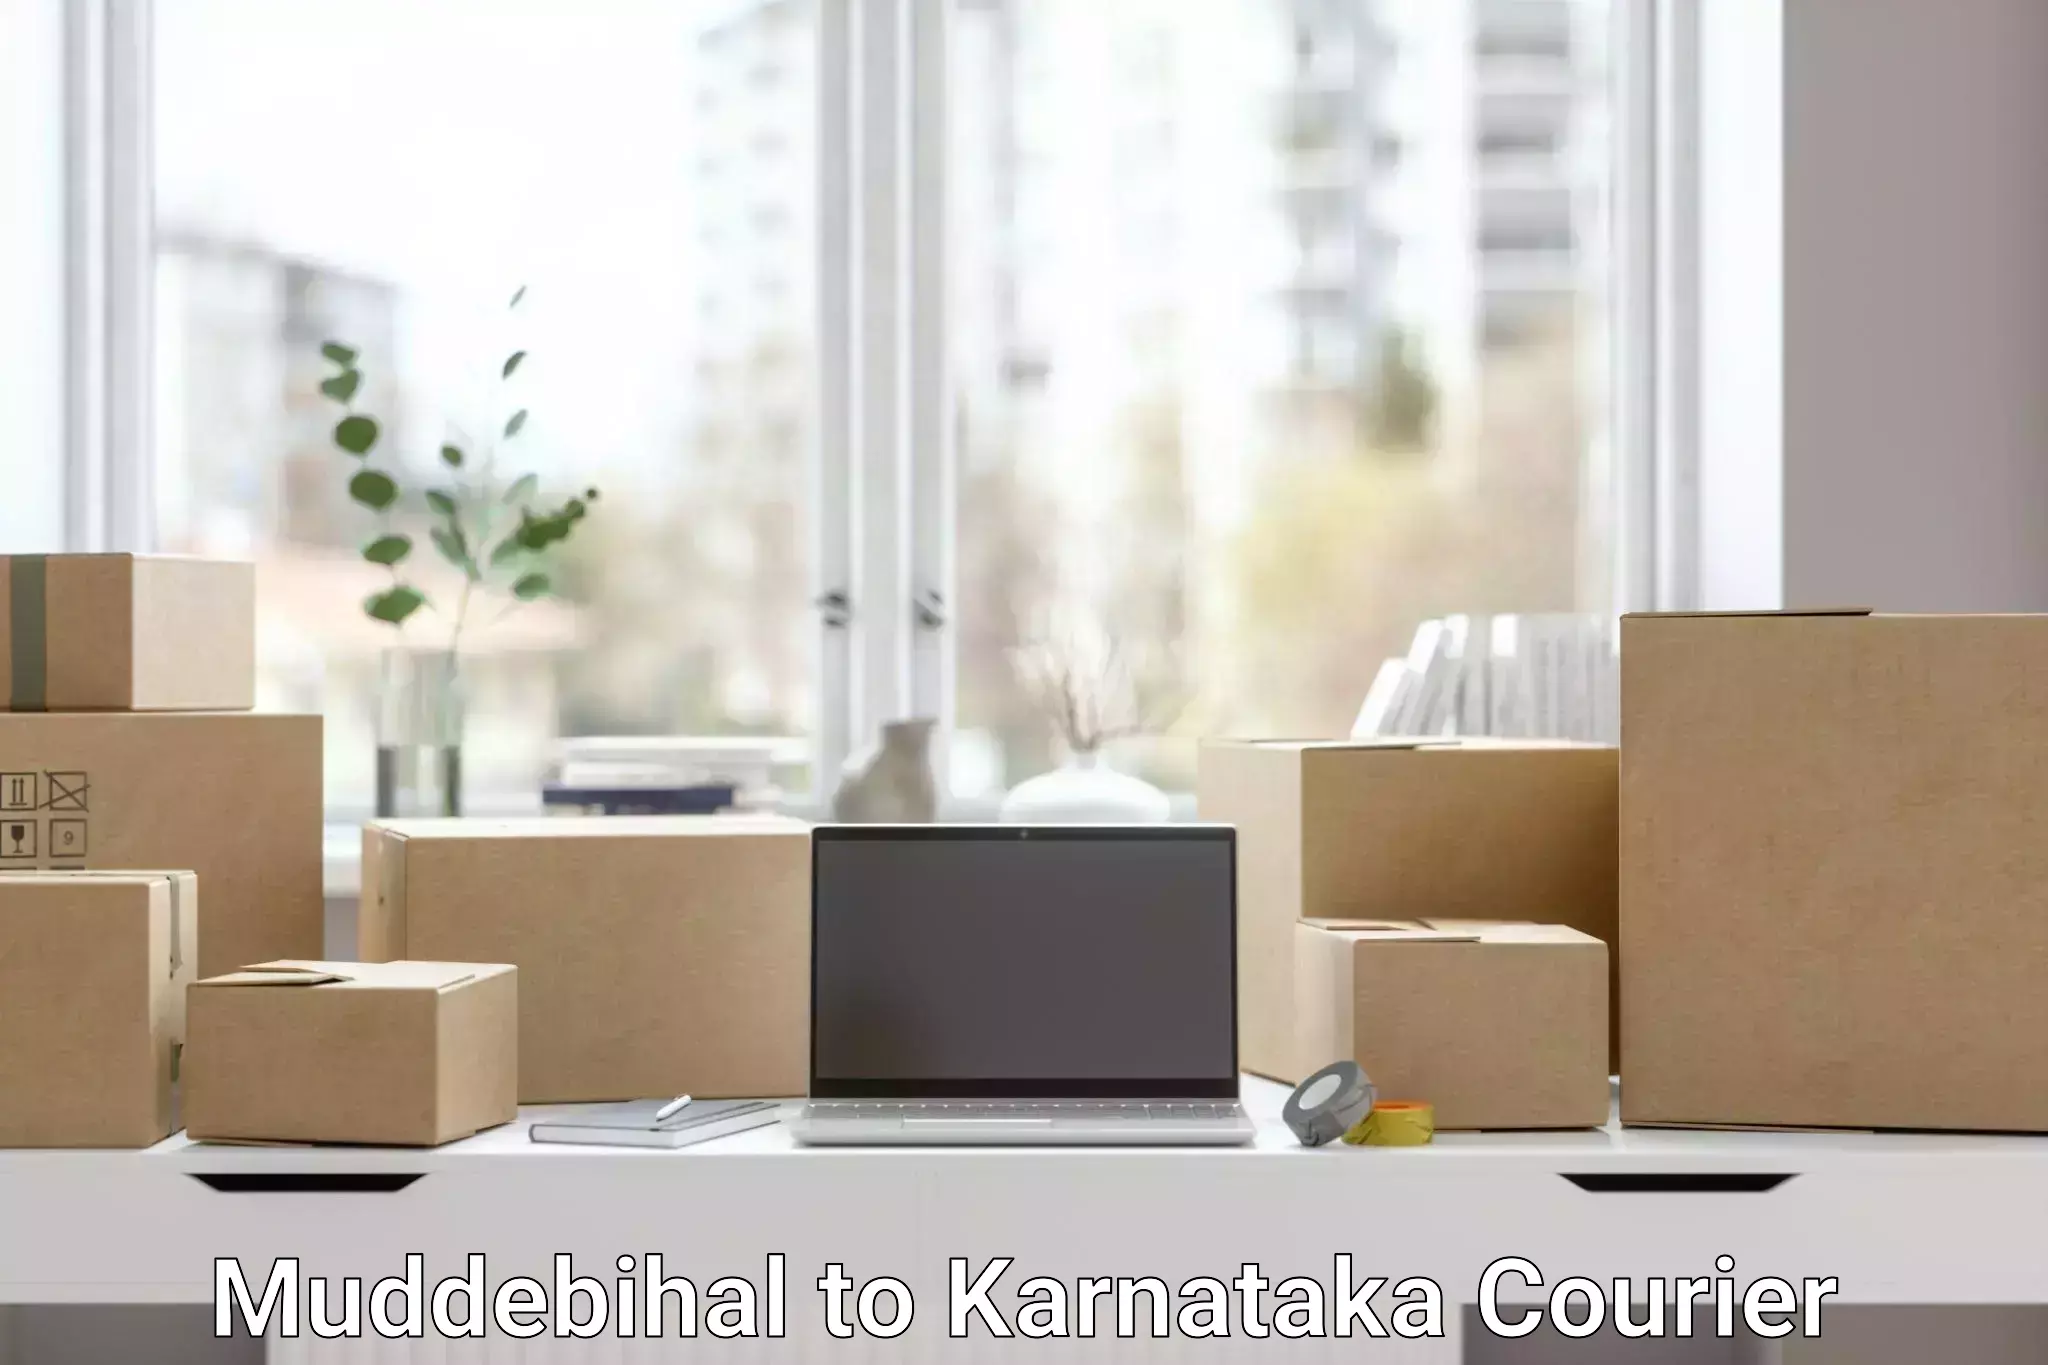 Customized shipping options in Muddebihal to Krishnarajanagara